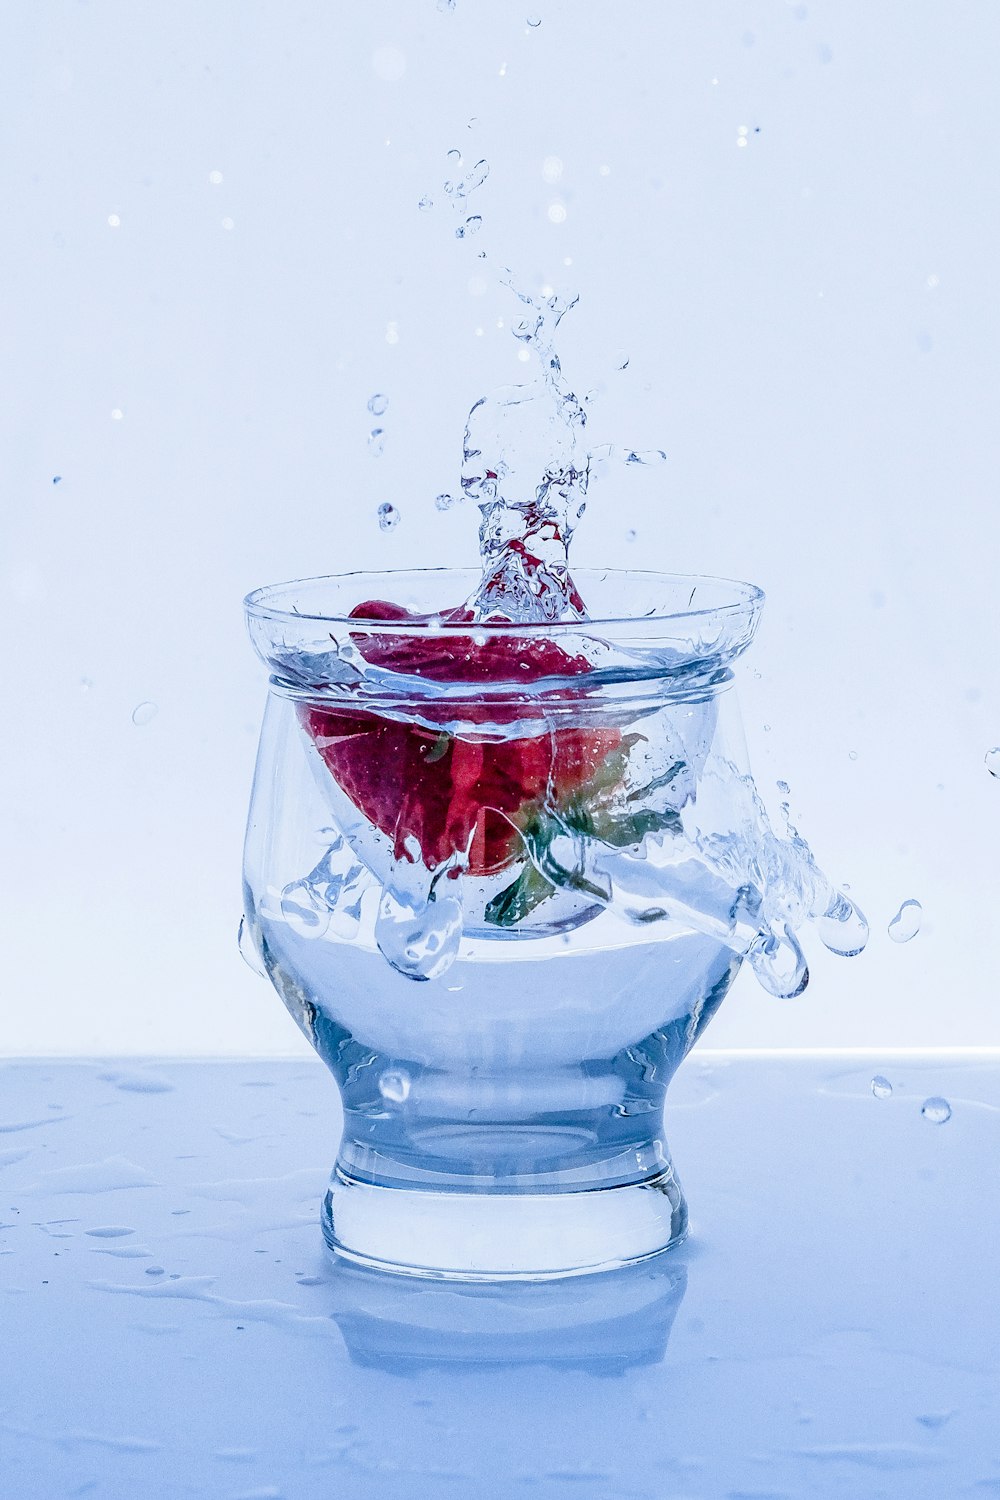 rosa rossa in acqua con acqua